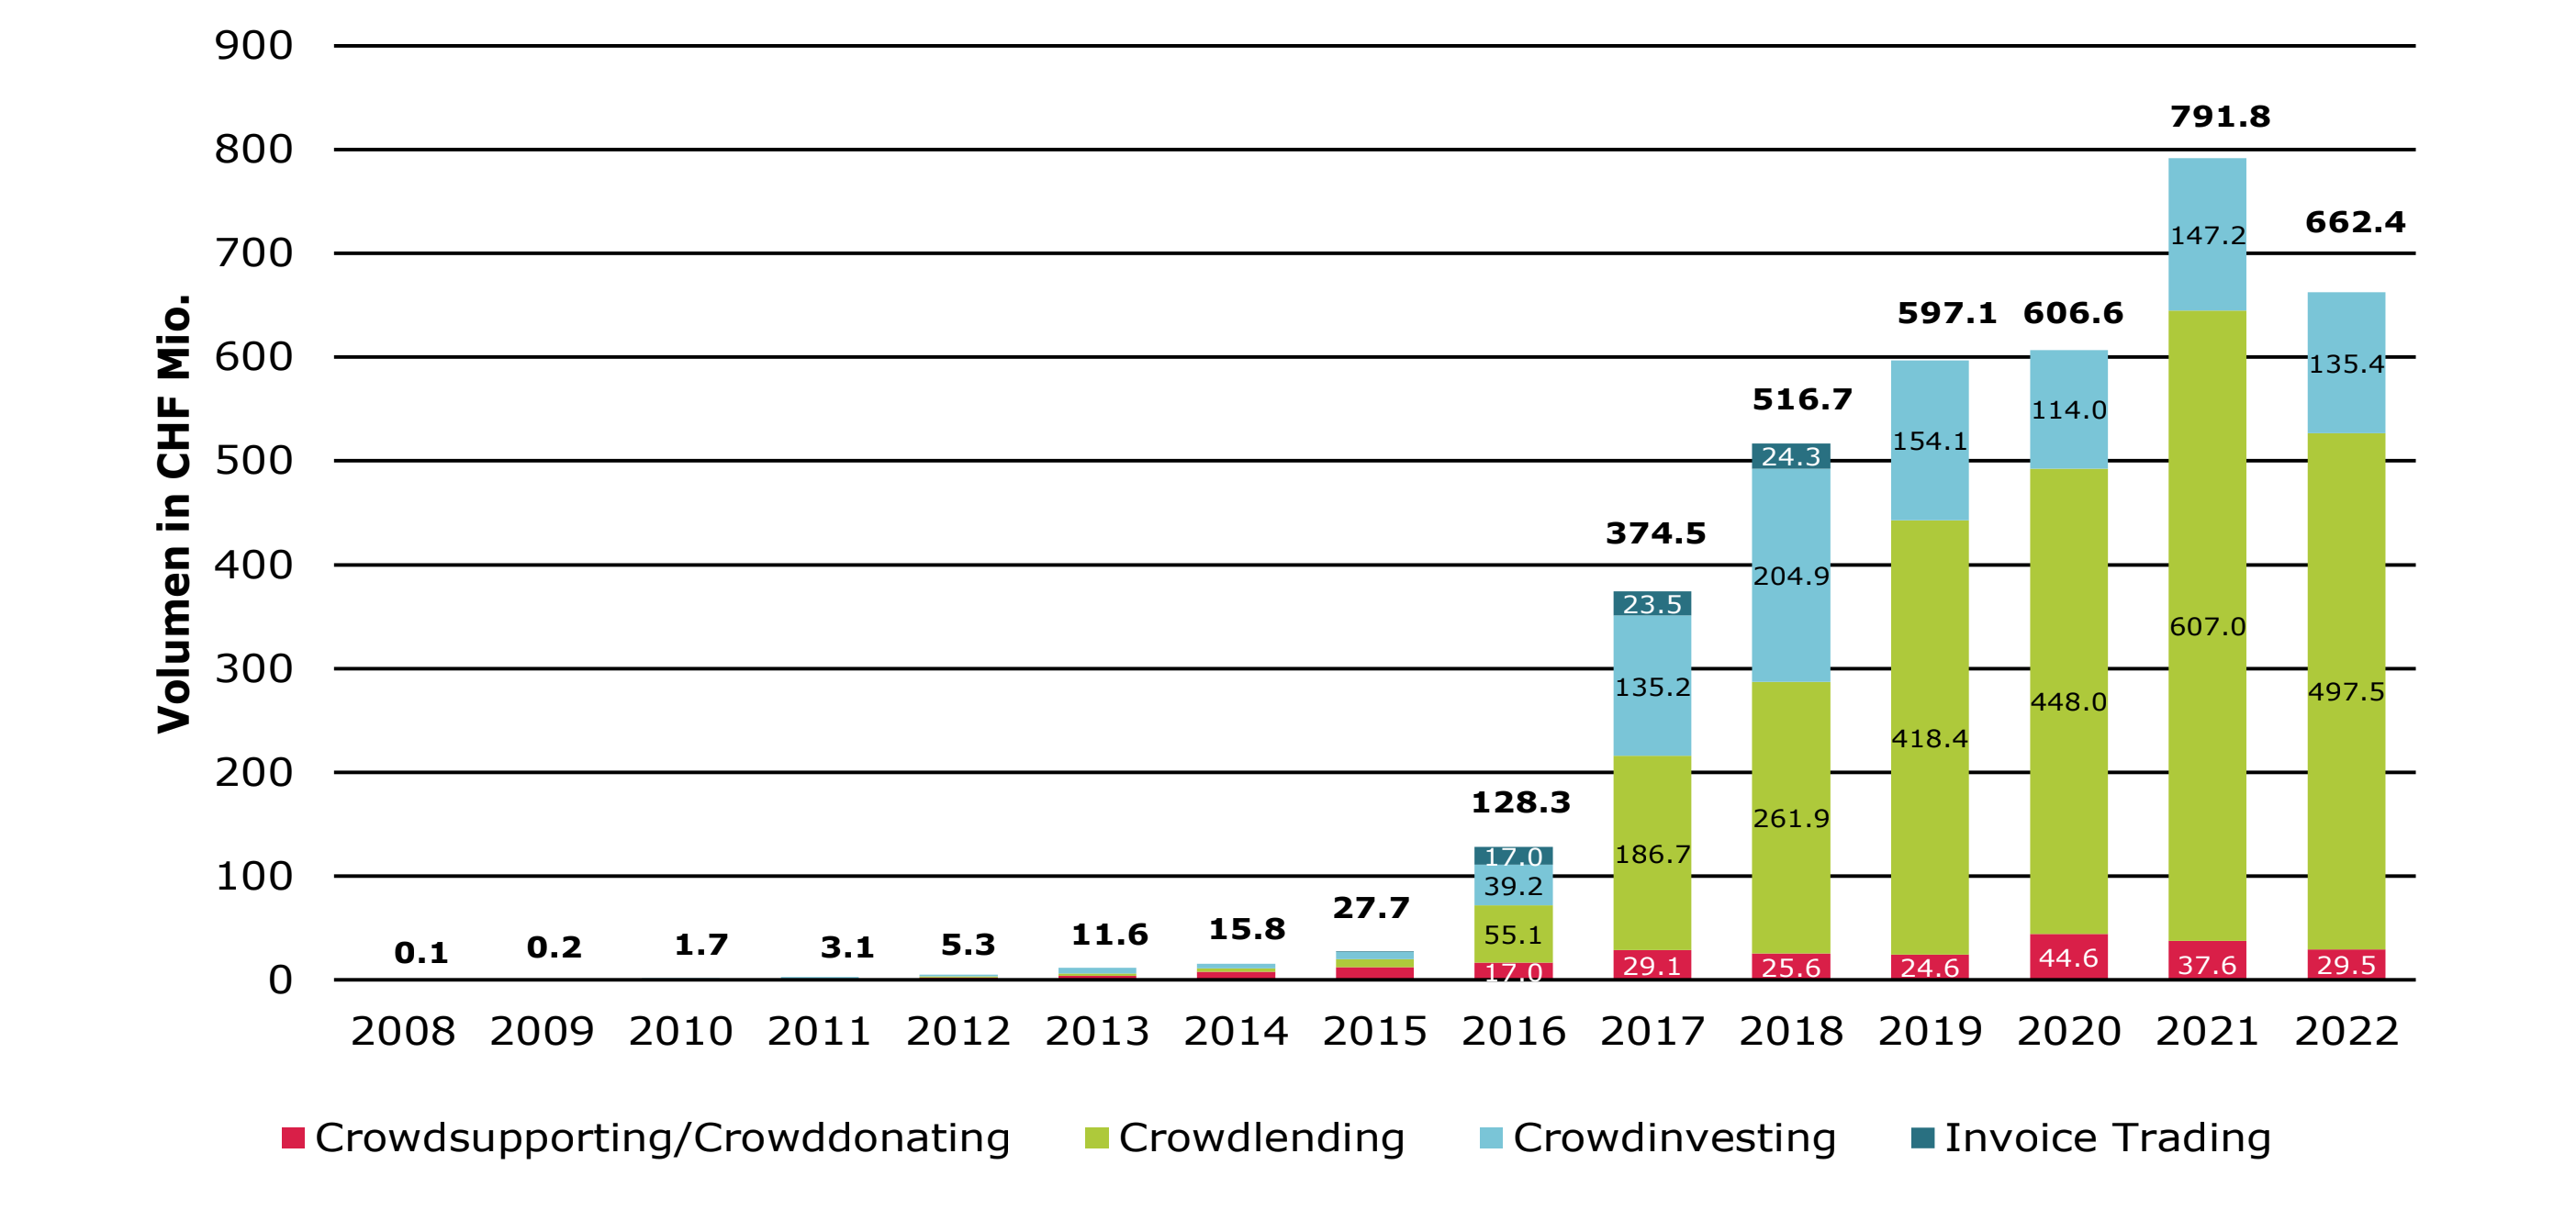 Abbildung 1: Entwicklung Crowdfunding in der Schweiz nach Volumen von 2008 bis 2022